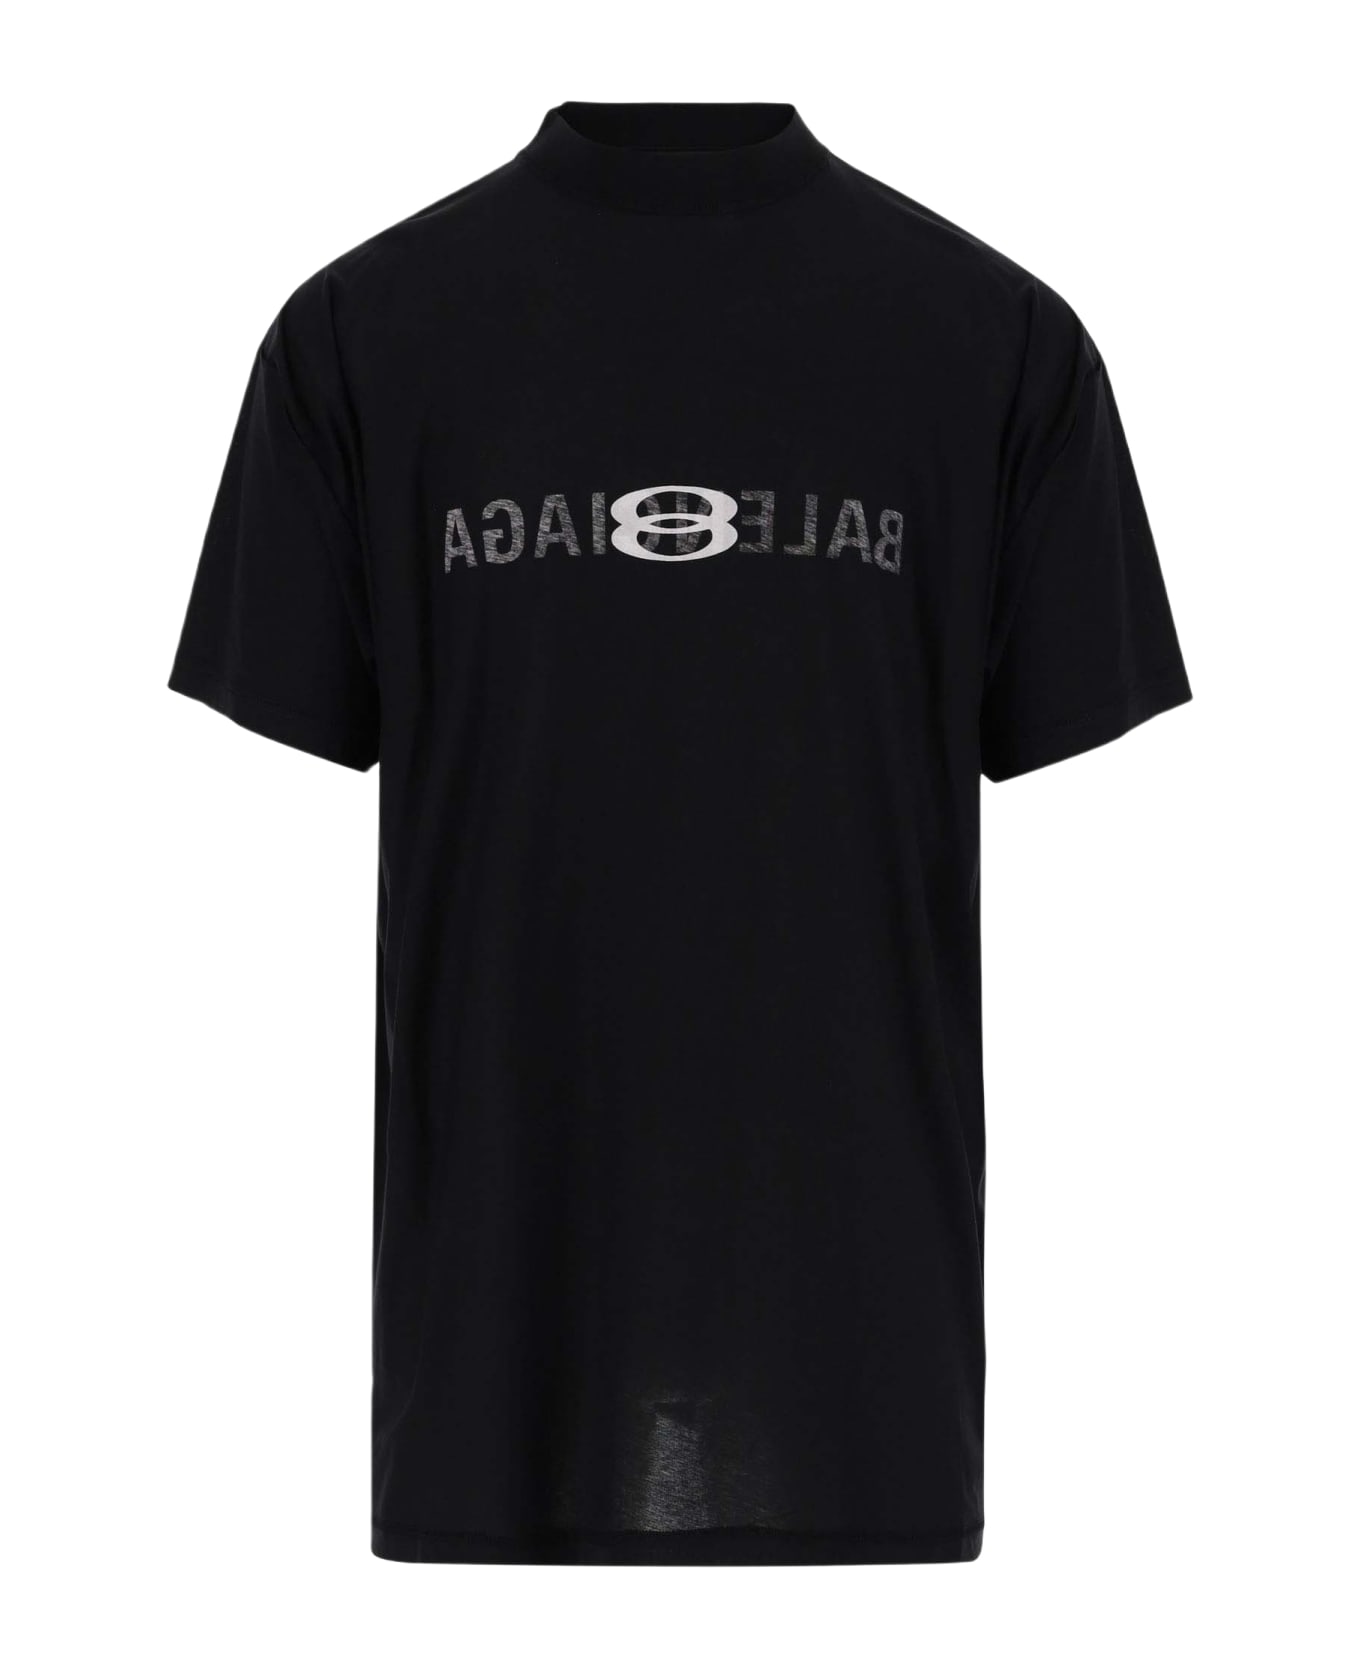 Balenciaga Cotton T-shirt With Logo - Black